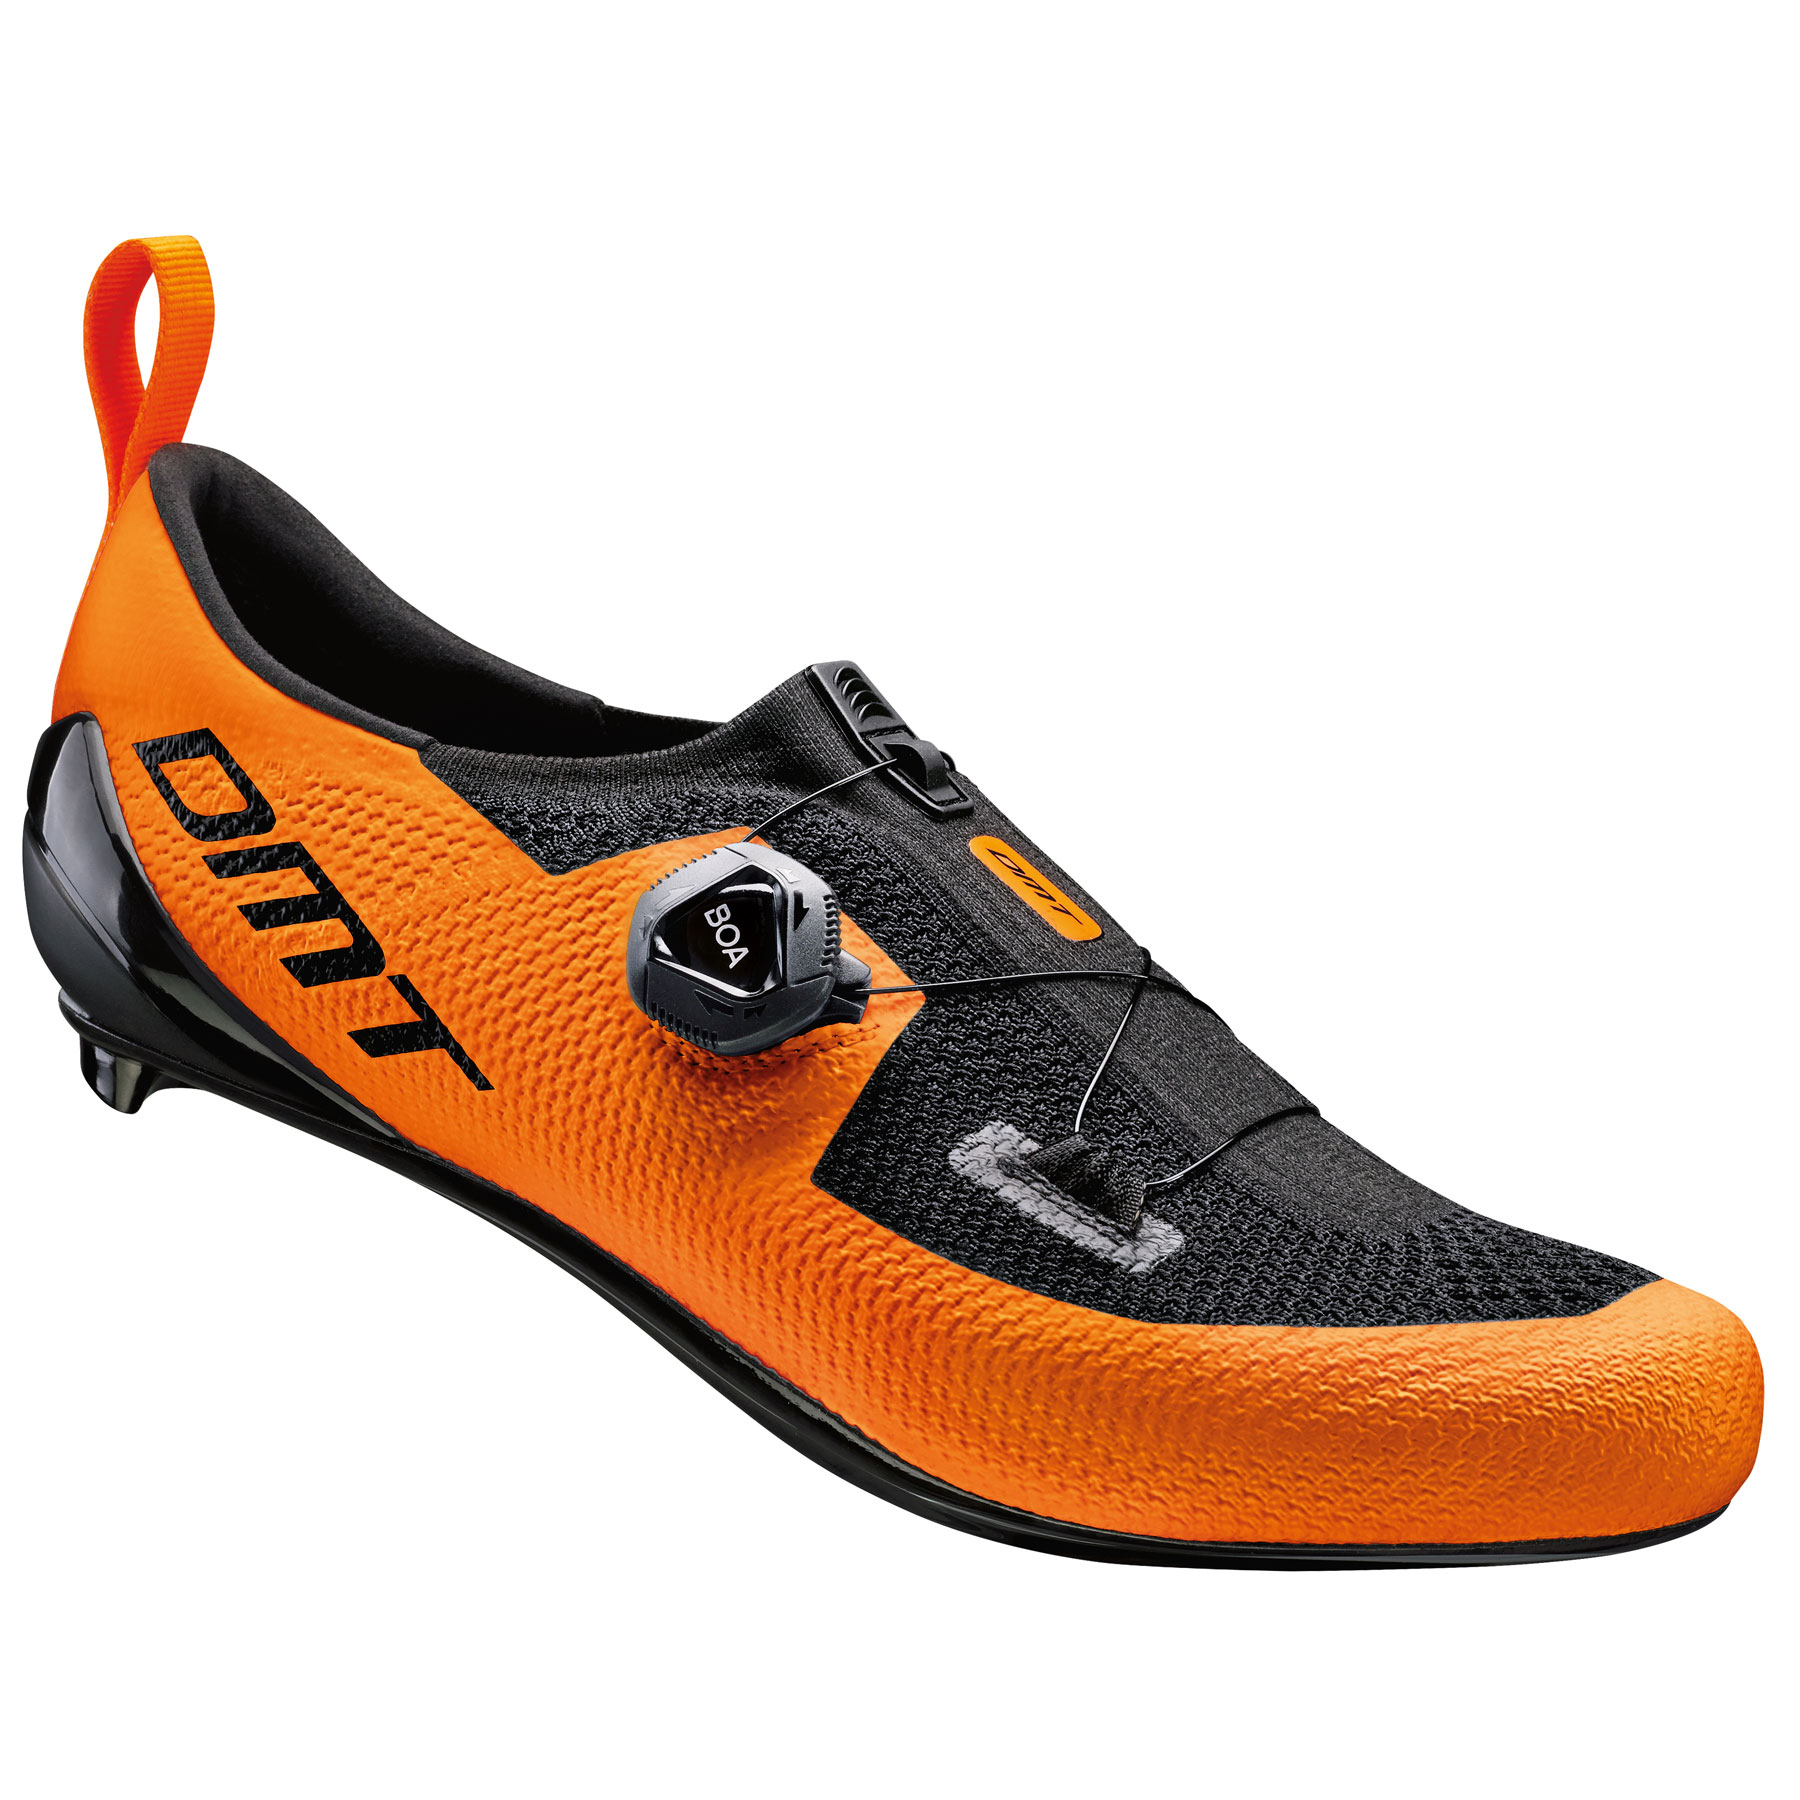 Produktbild von DMT KT1 Triathlonschuh - orange/black